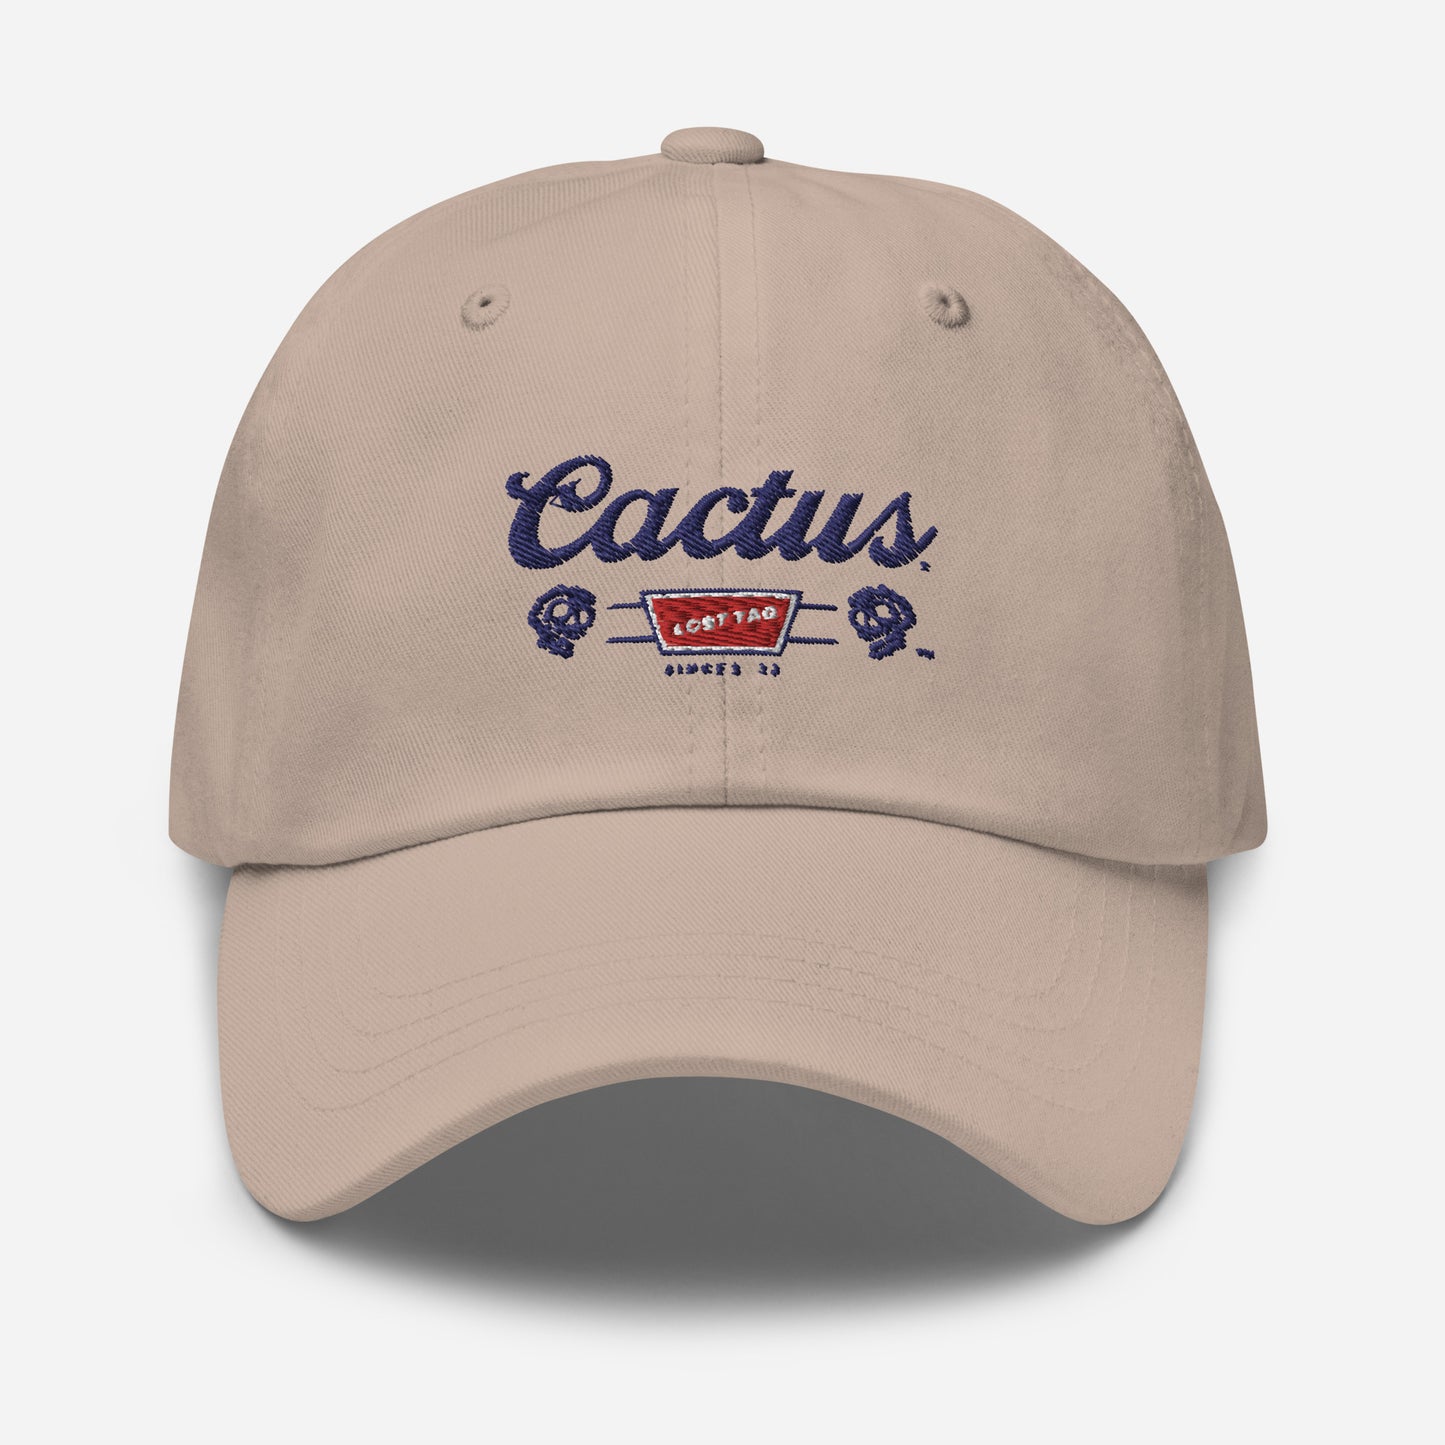 Cactus Dad hat